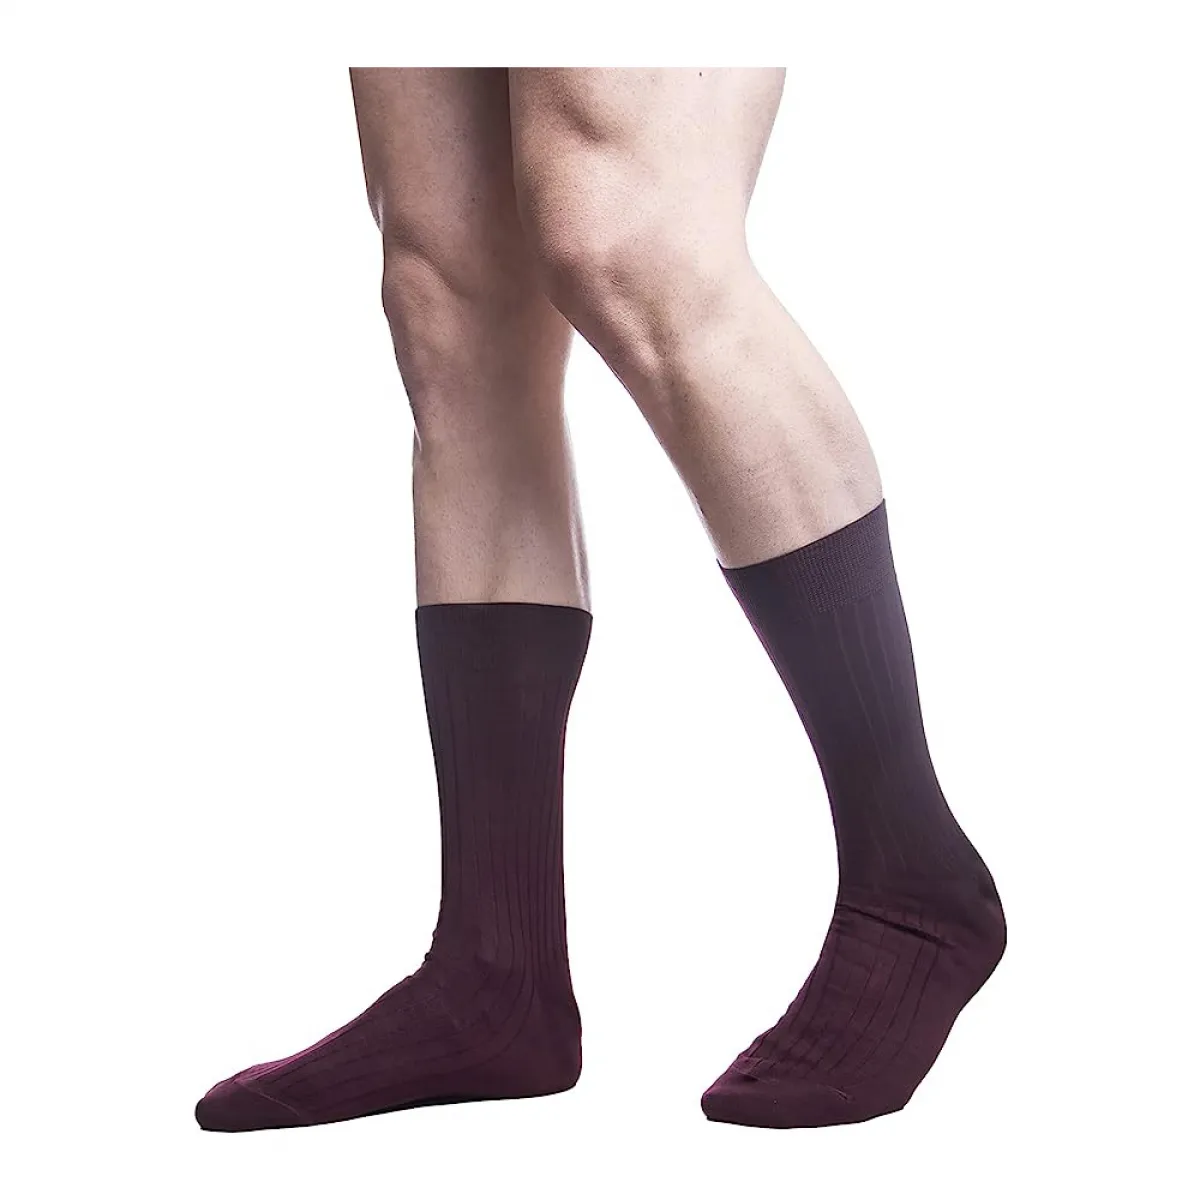 PETTI Italian Artisans Men's Short Socks, Burgundy Rib,44-47